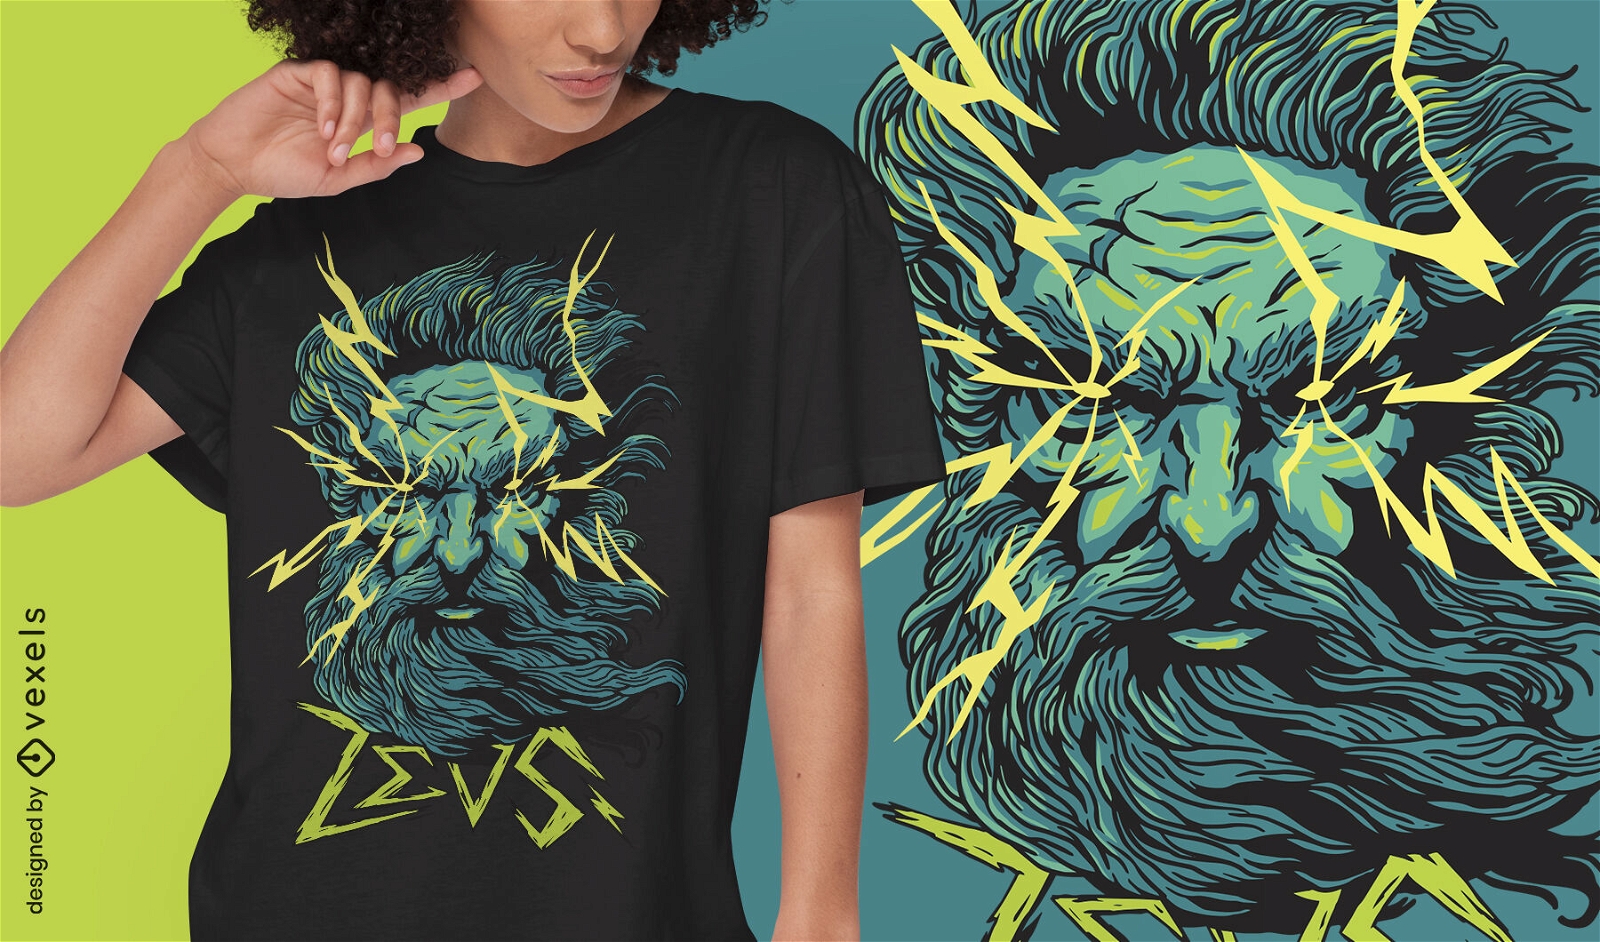 Zeus Gott mythisches Griechenland T-Shirt Design